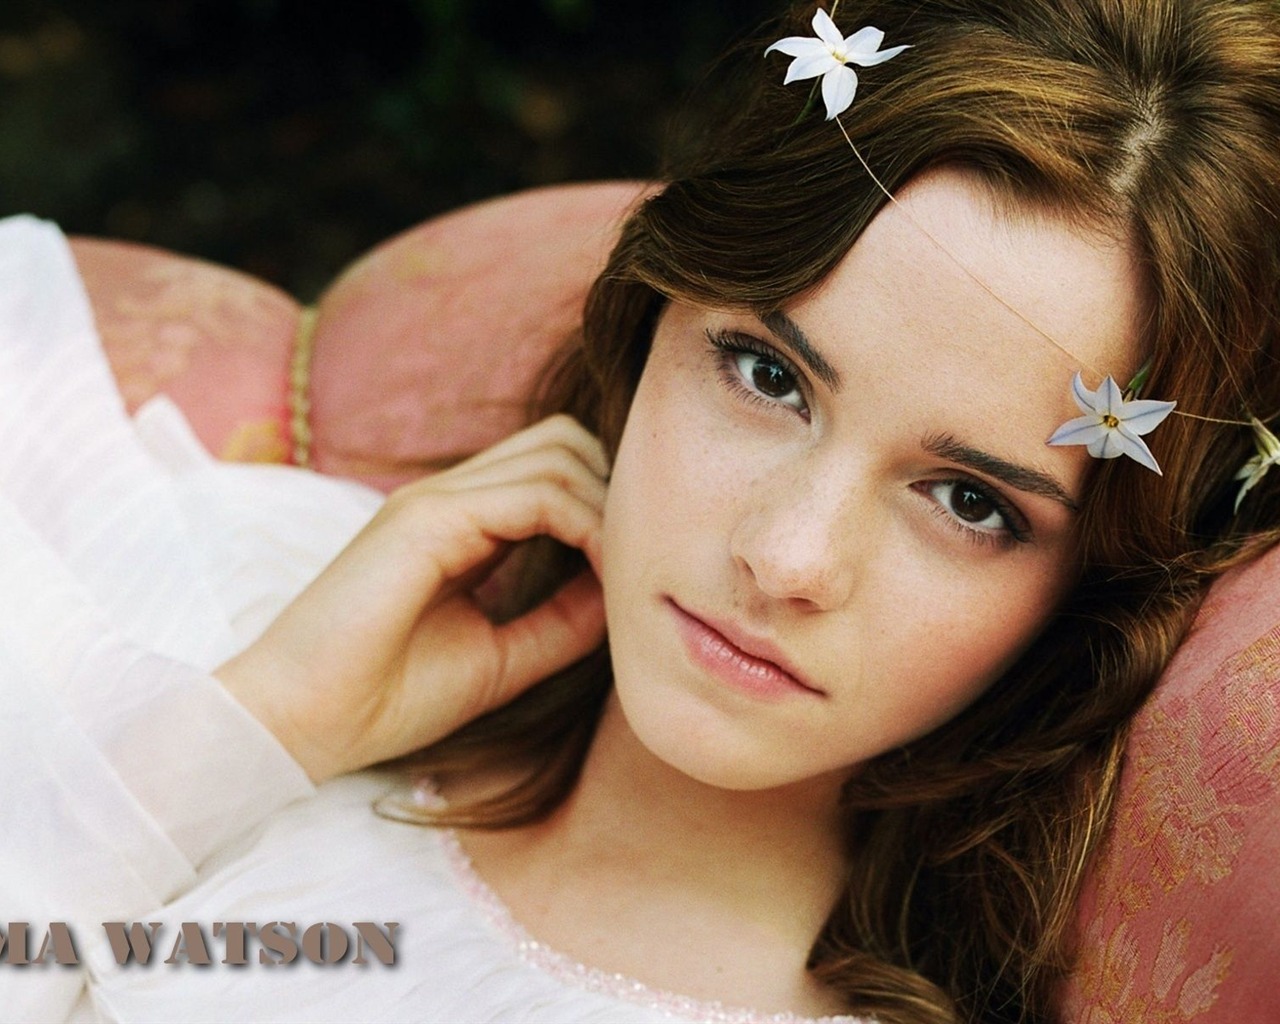 Emma Watson 艾玛·沃特森 美女壁纸27 - 1280x1024